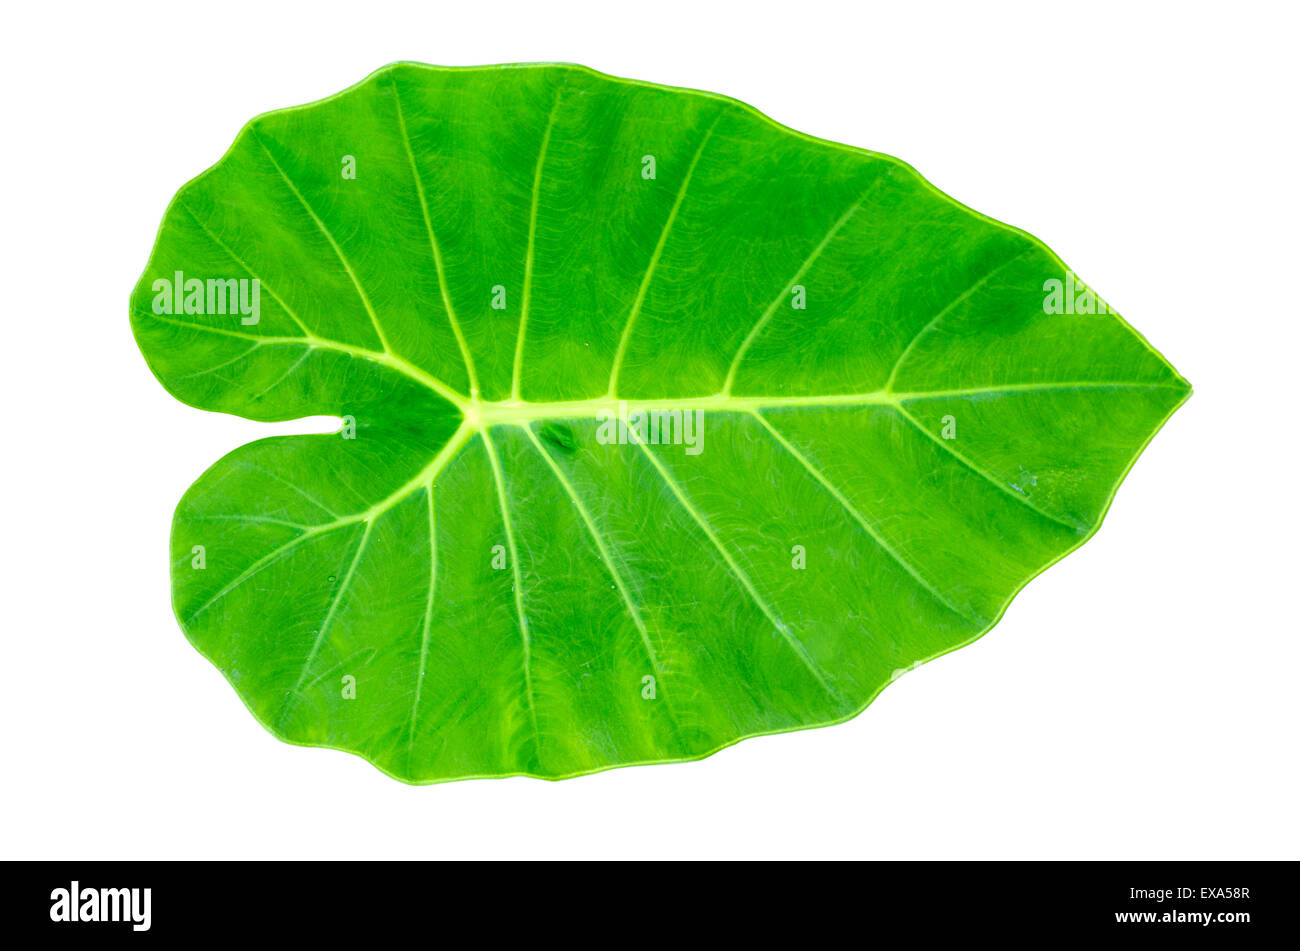 Green Caladium leaf,Elephant Ear  isolate on white background Stock Photo